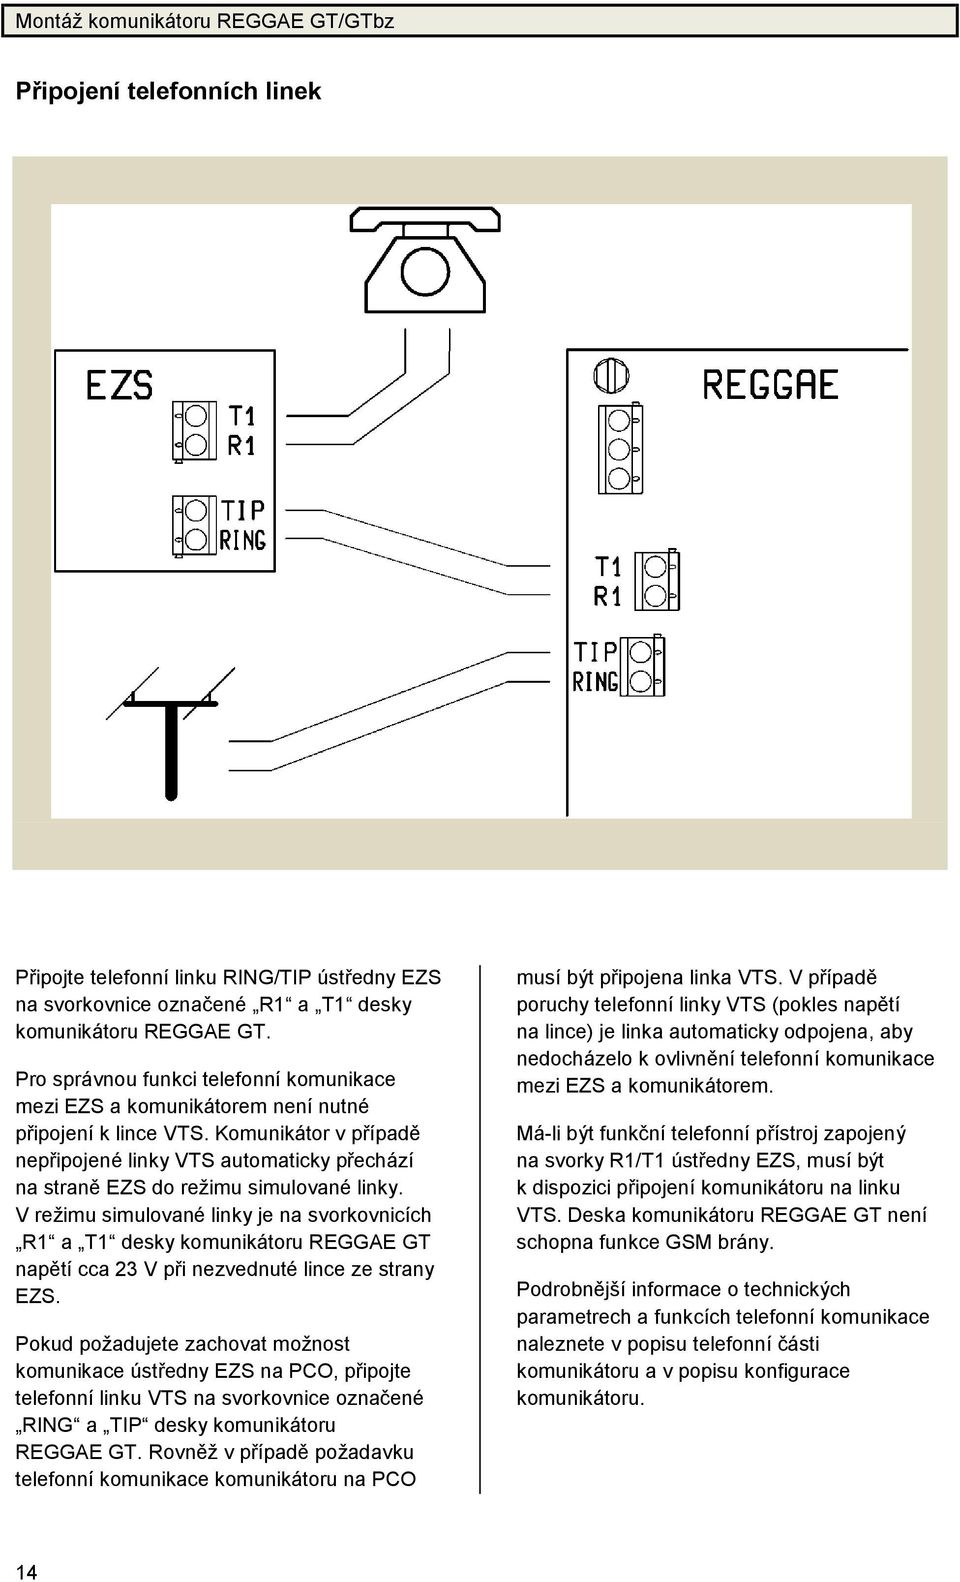 Komunikátor v případě nepřipojené linky VTS automaticky přechází na straně EZS do režimu simulované linky.